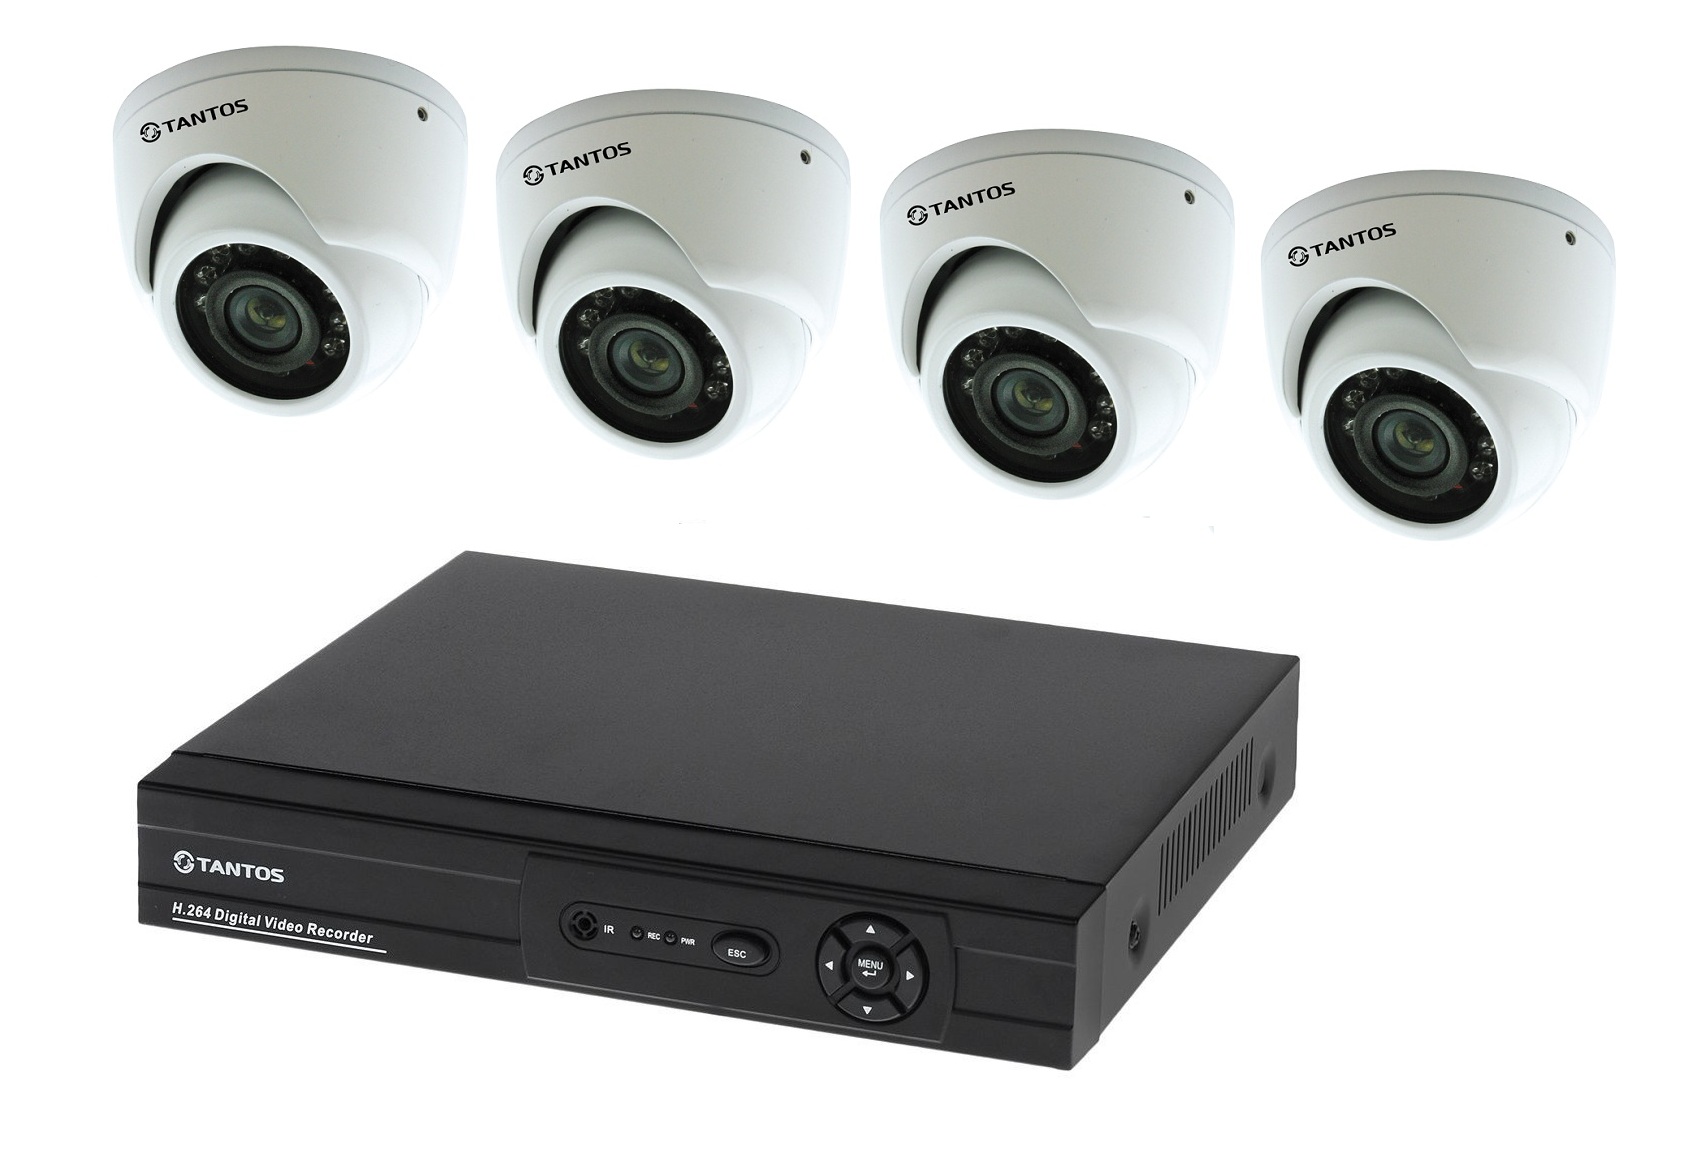 Регистратор саратов. Комплект видеонаблюдения "tantos Страж-4". Камера видеонаблюдения XPX комплект н.264. Комплект видеонаблюдения DVR 7204c1 с 4 видеокамерами. Комплект видеонаблюдения установи сам Sony 13кам.